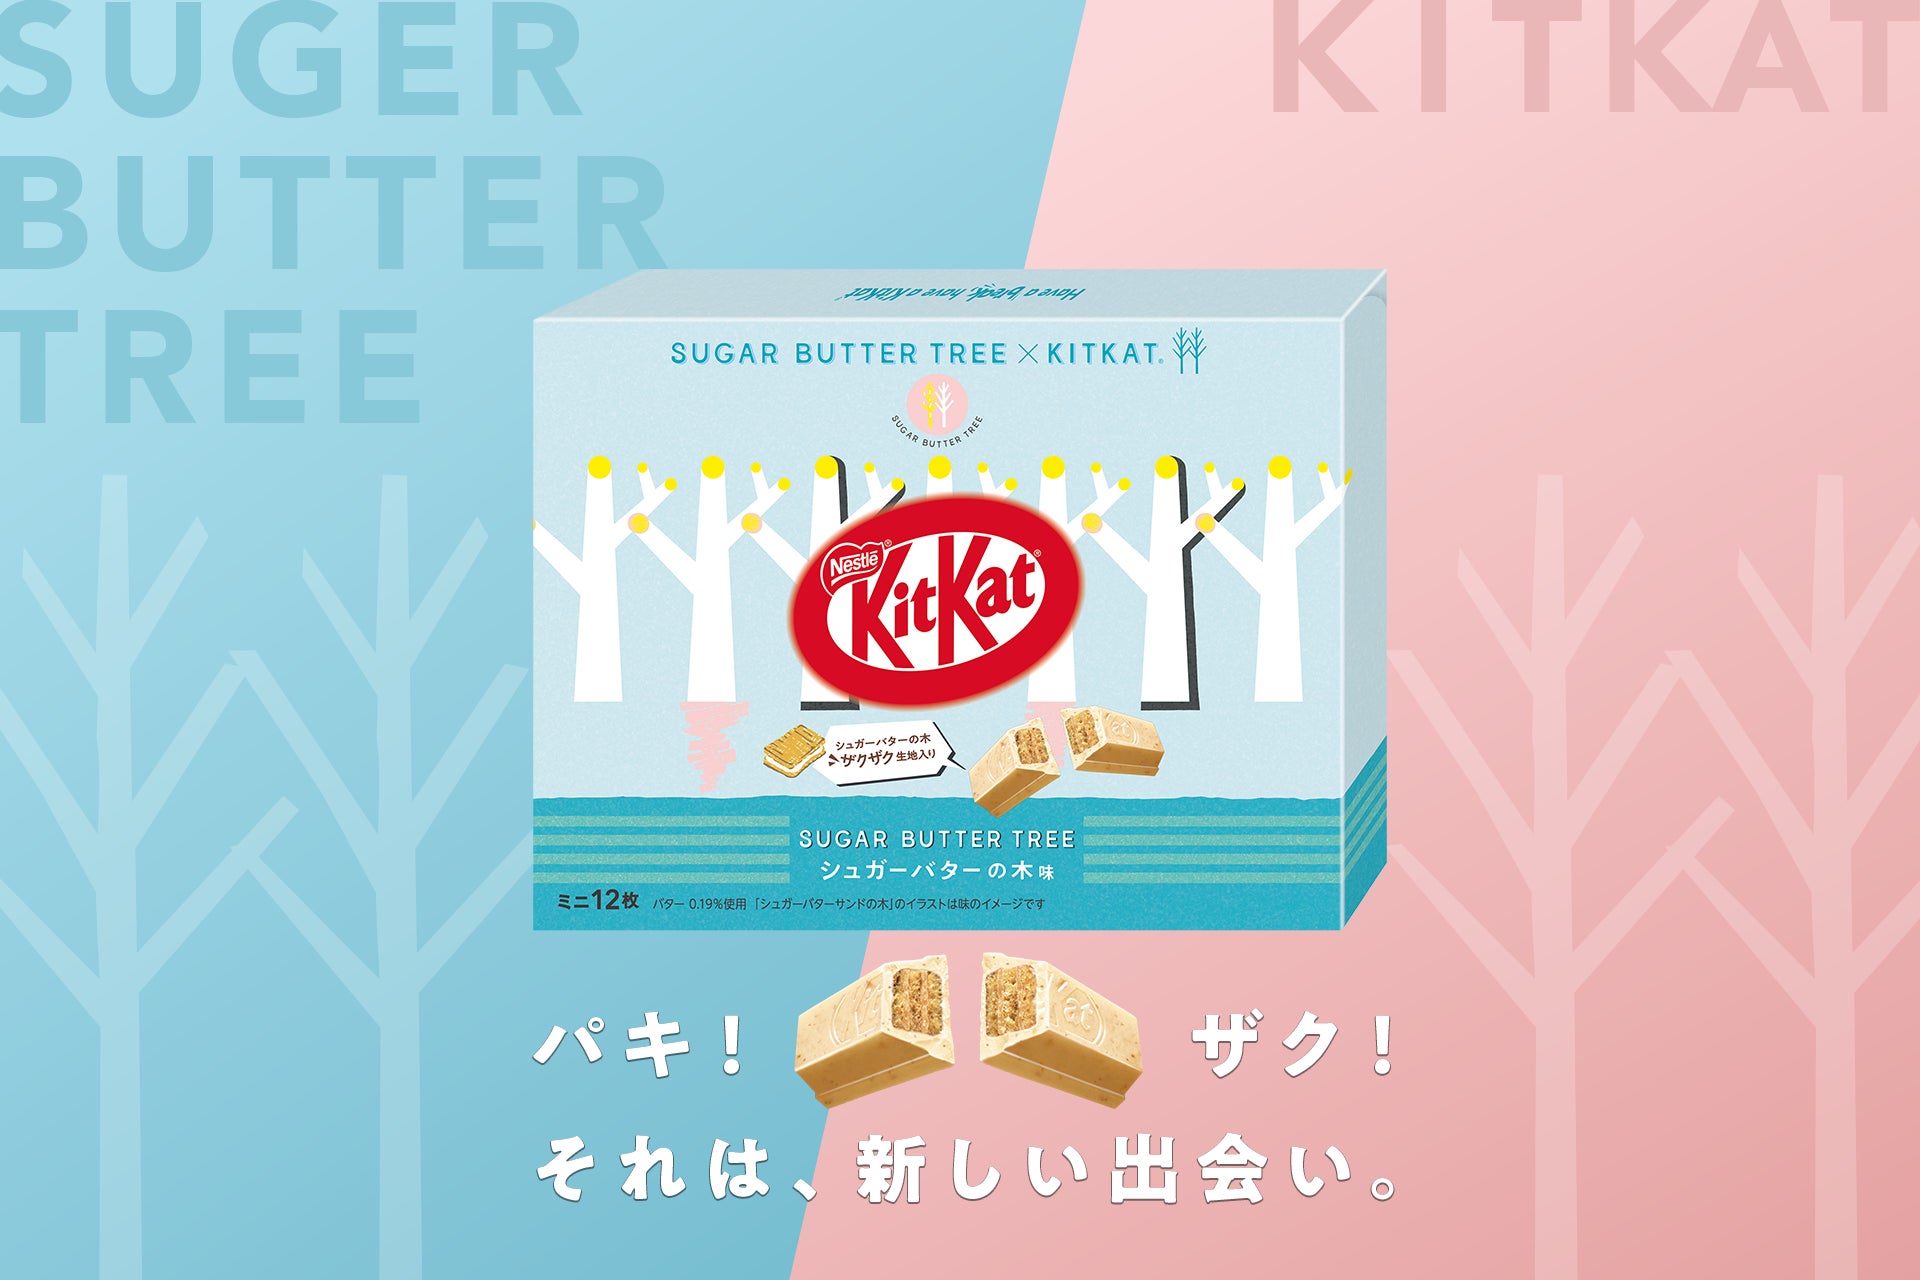 「キットカット ミニ シュガーバターの木味」11月22日(水)より、東京駅一番街「東京おかしランド」で販売開始